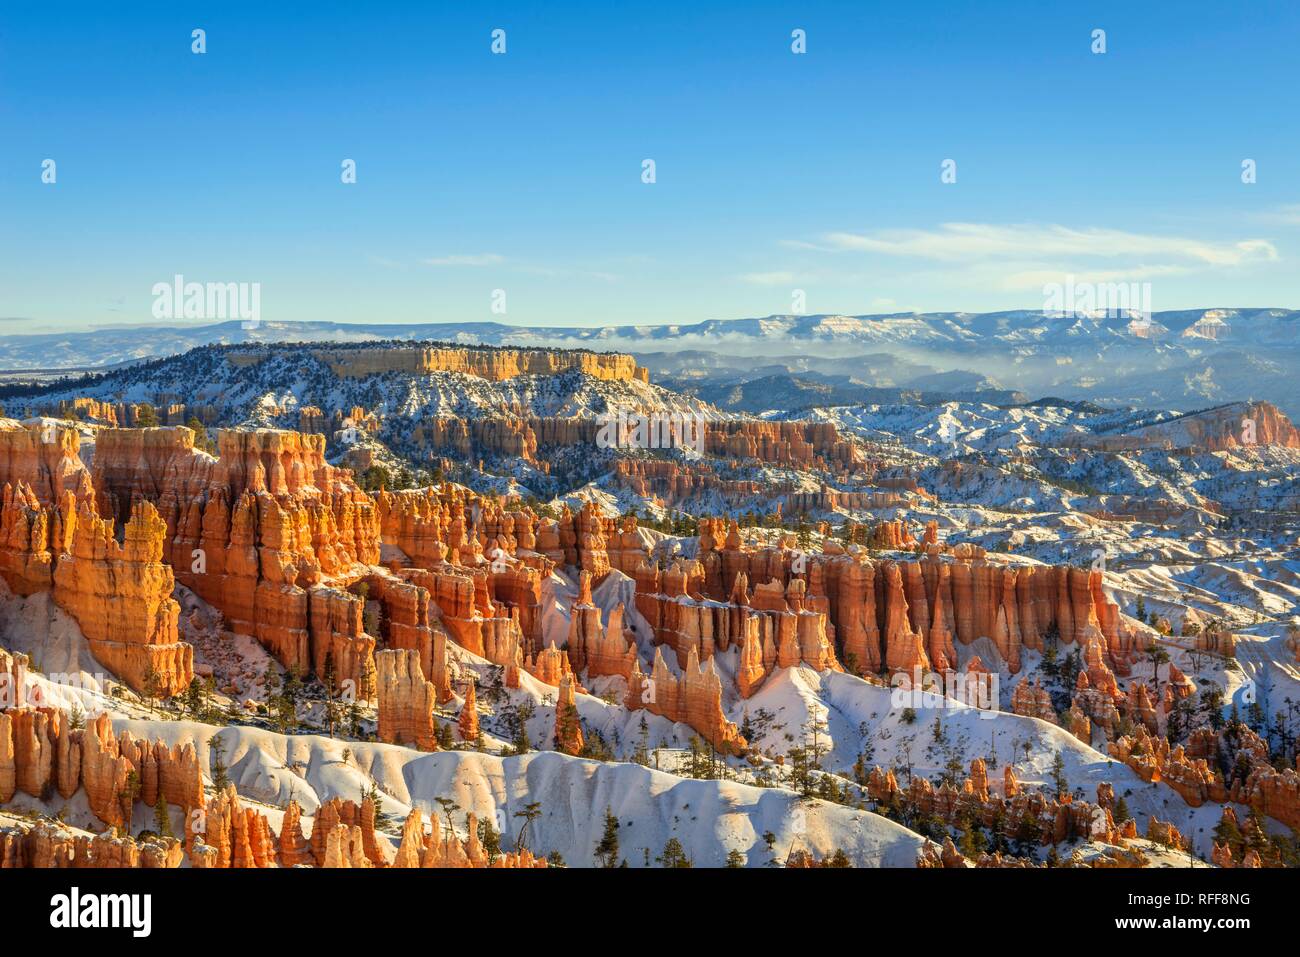 La luce del mattino, coperta di neve bizzarro paesaggio roccioso con Hoodoos in inverno, Sunset Point, Parco Nazionale di Bryce Canyon, Utah, Stati Uniti d'America Foto Stock